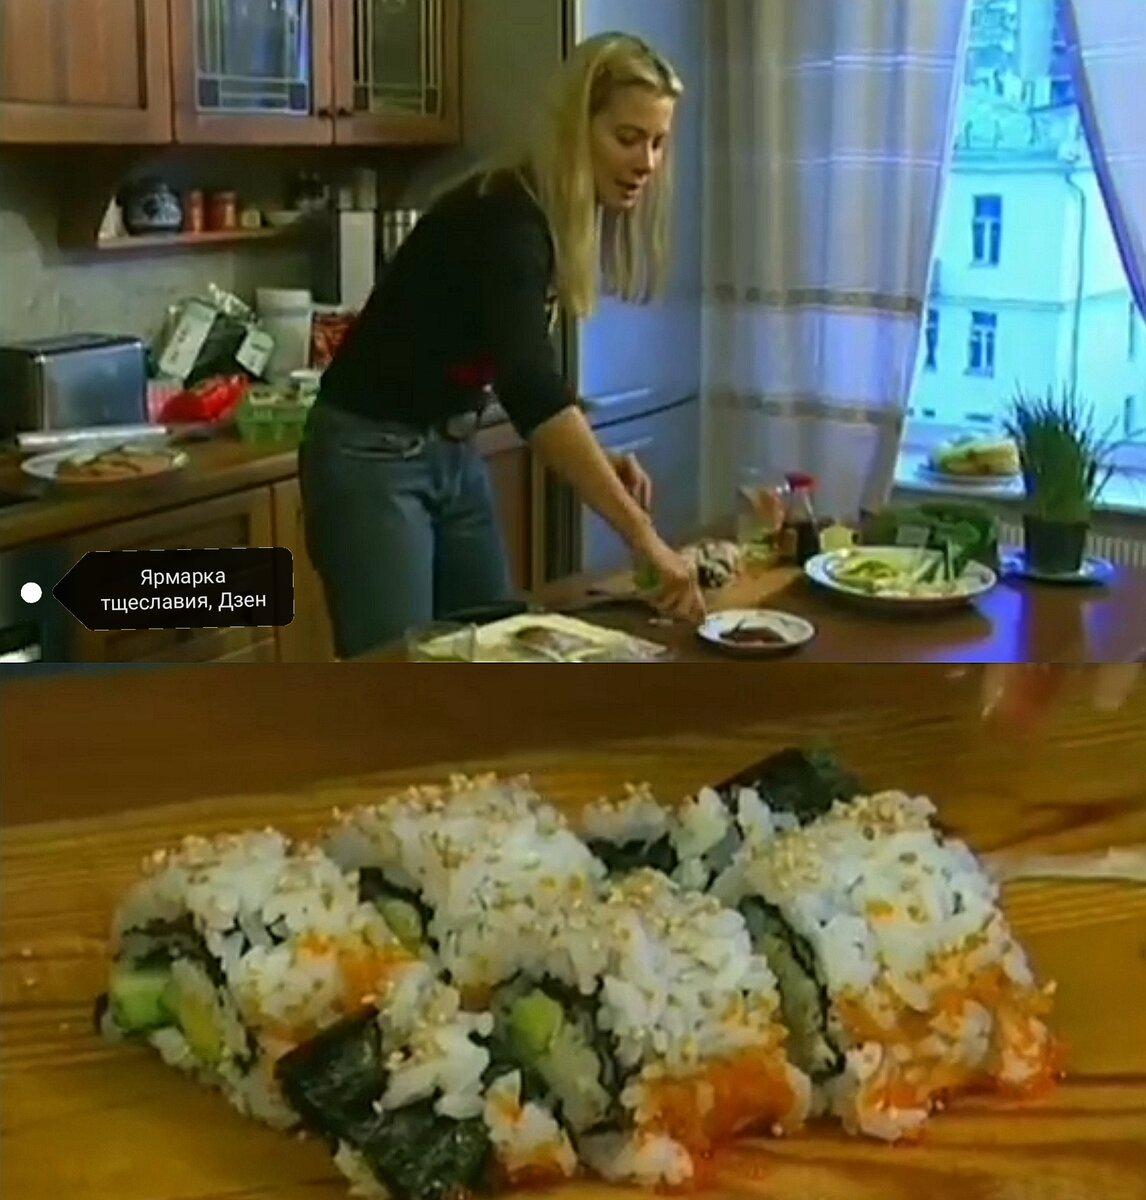 В 2003 году на канале НТВ начало выходить шоу Юлии Высоцкой "Едим дома". Формат передачи выглядел необычно для тех лет - актриса в домашней обстановке готовила разные блюда.-3